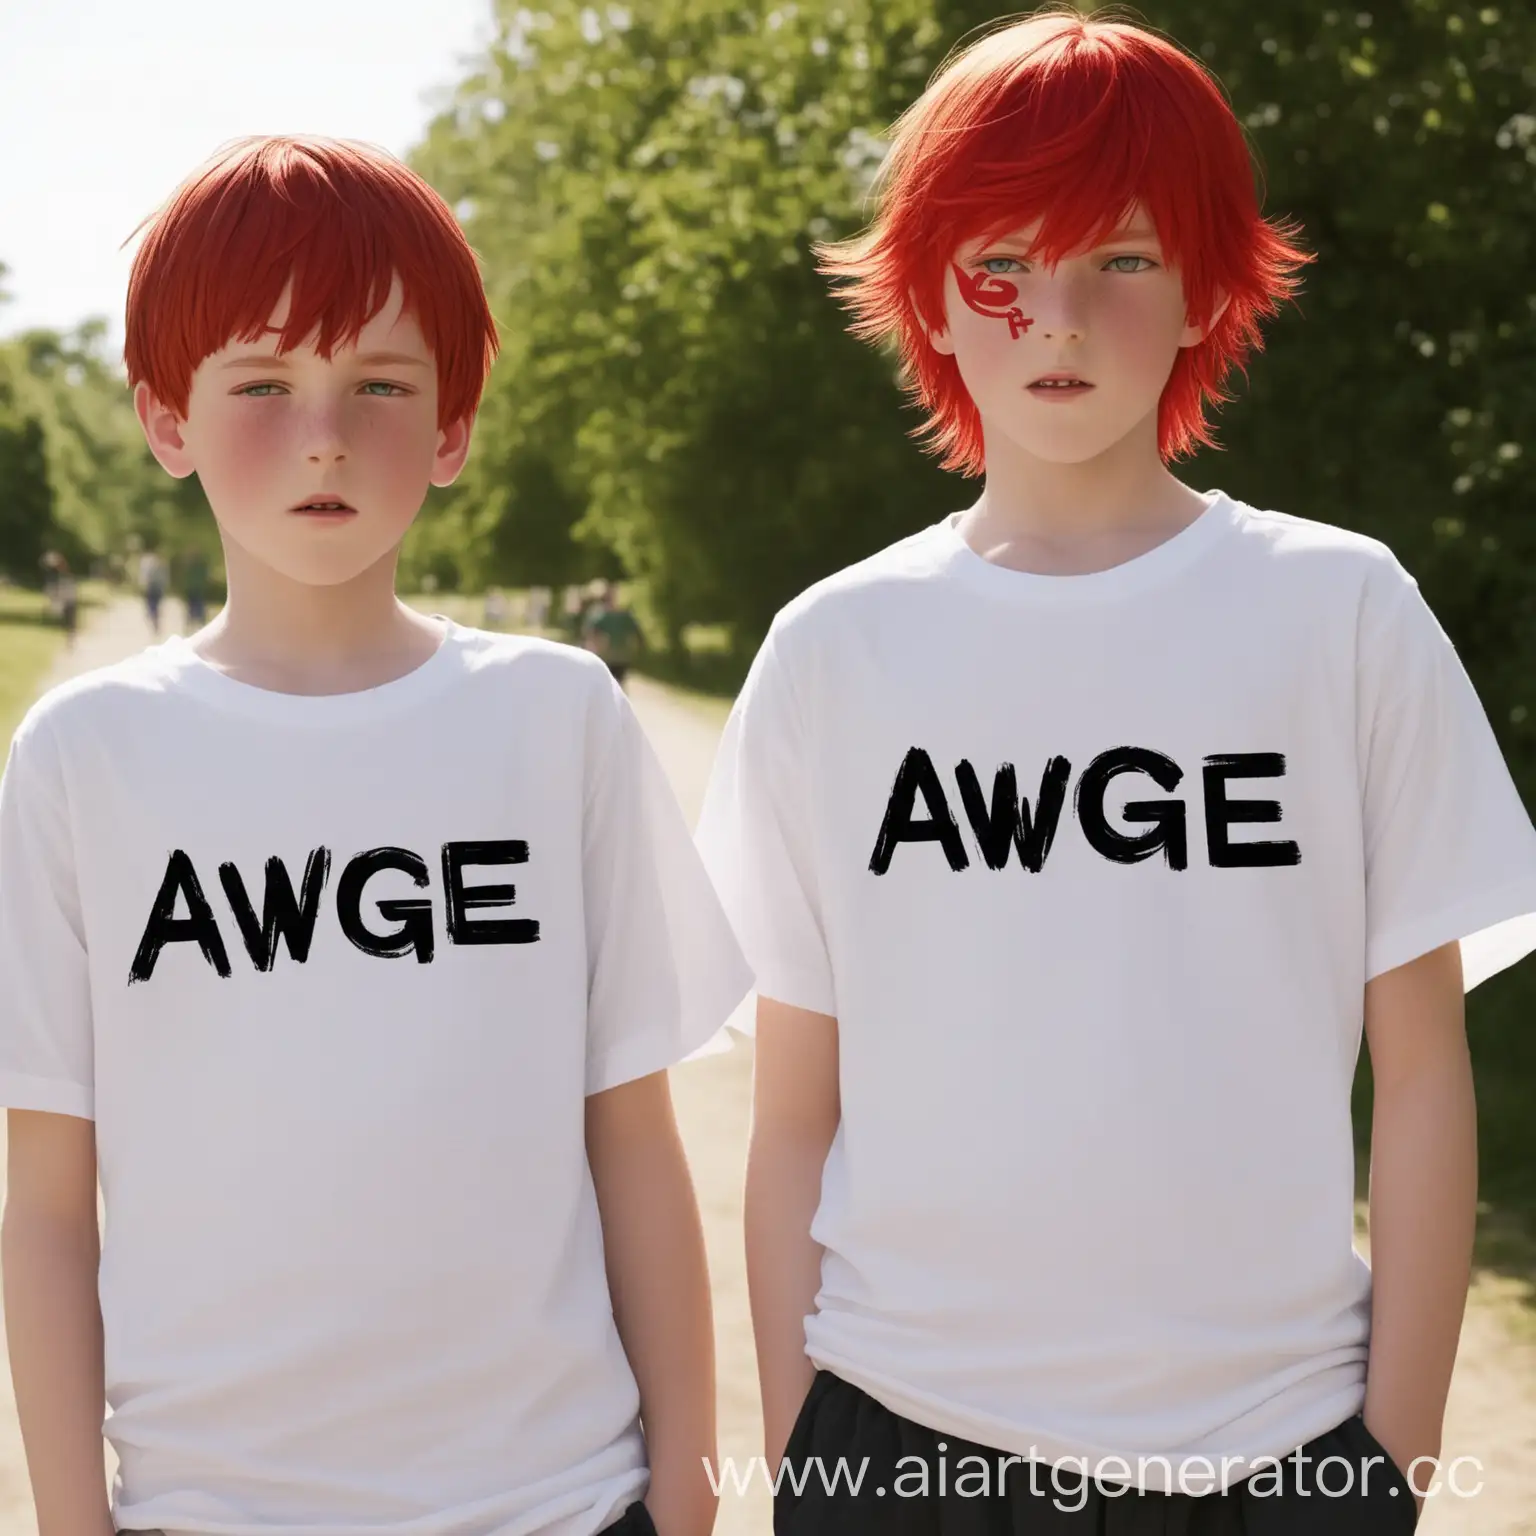 2 мальчика с красными волосами с надписью на футболках AWGE